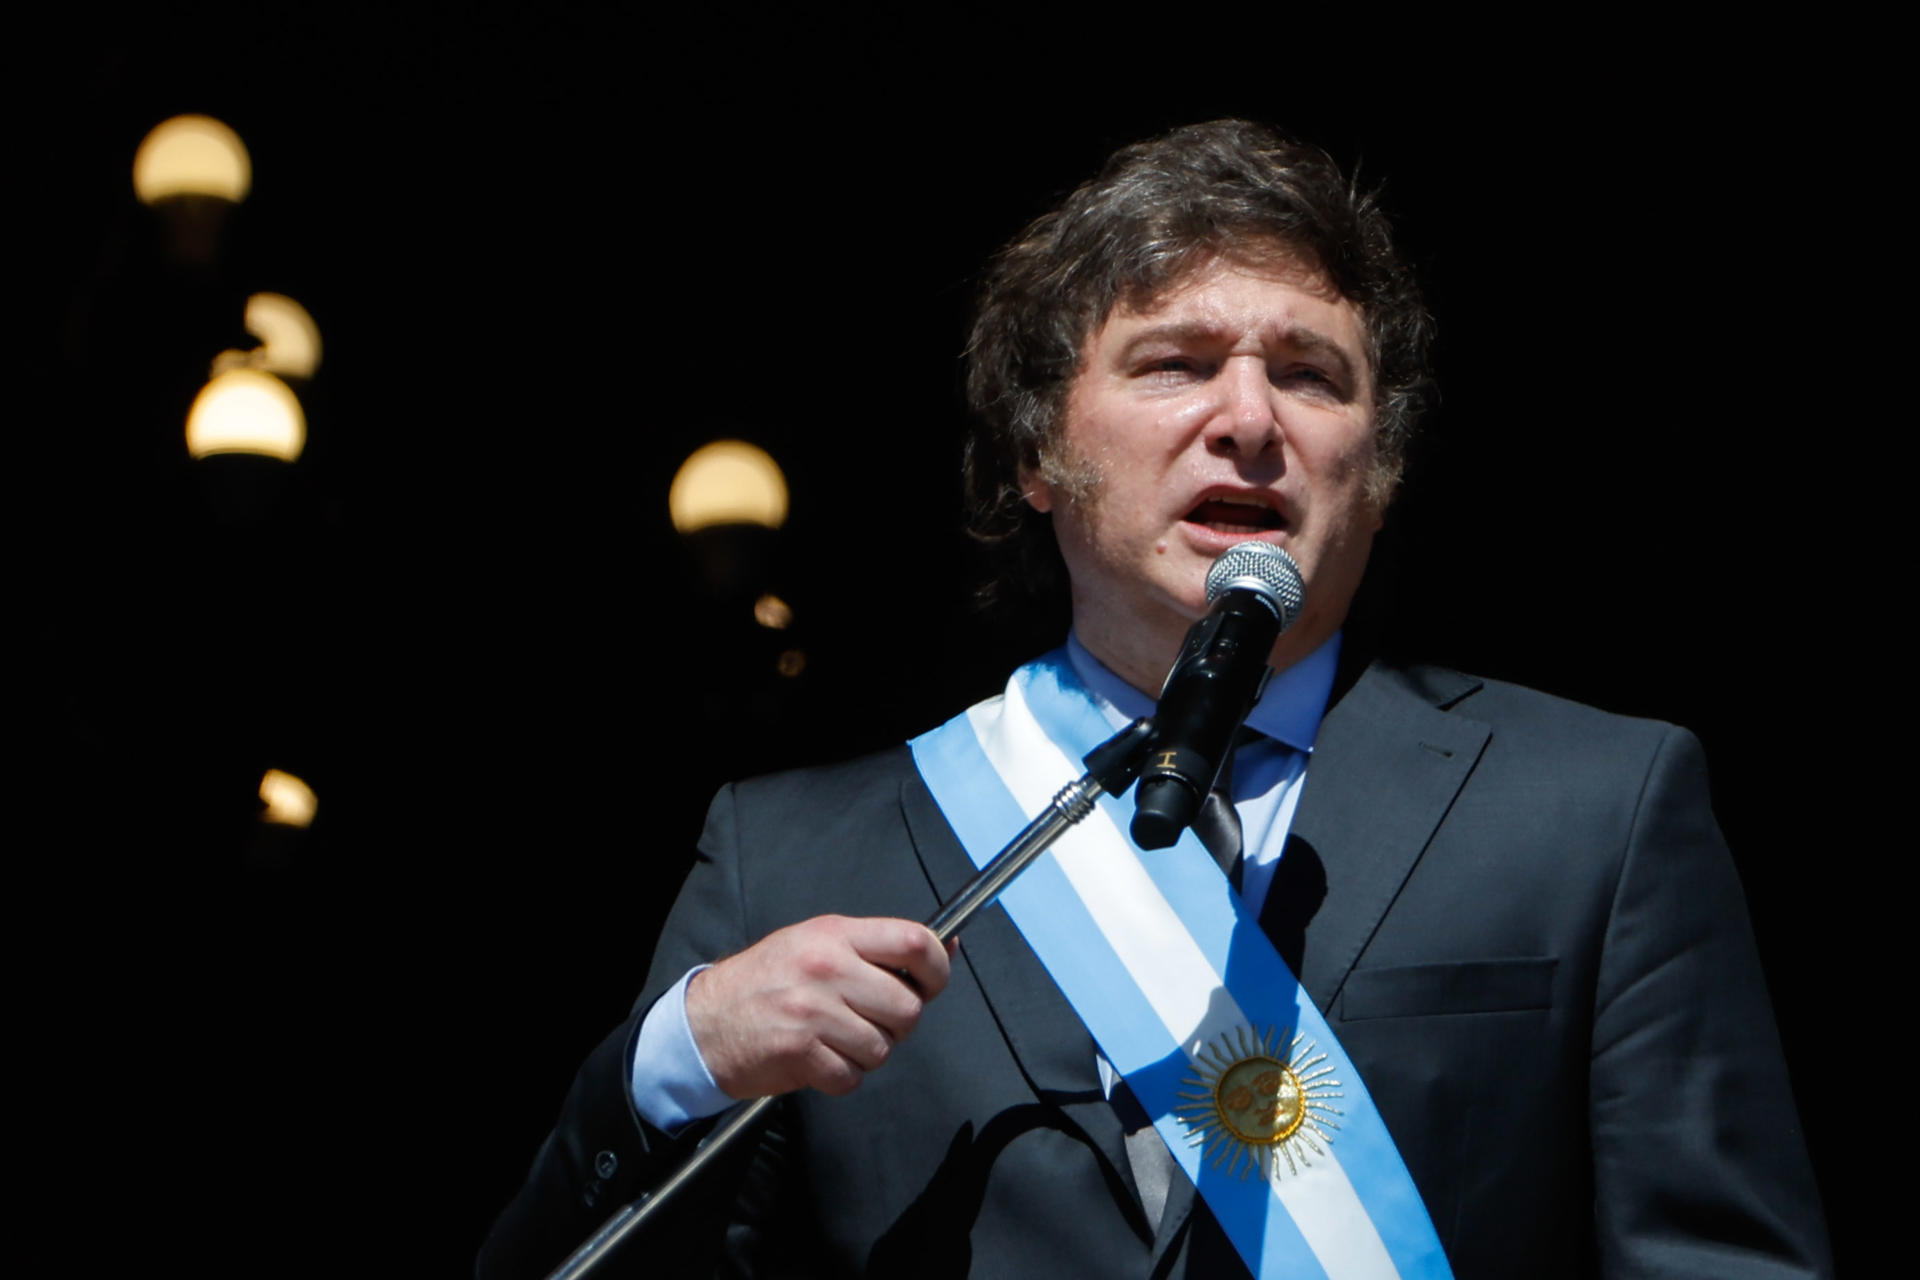 Milei tildó de “corruptos y sádicos” a los críticos de su reforma estatal en Argentina